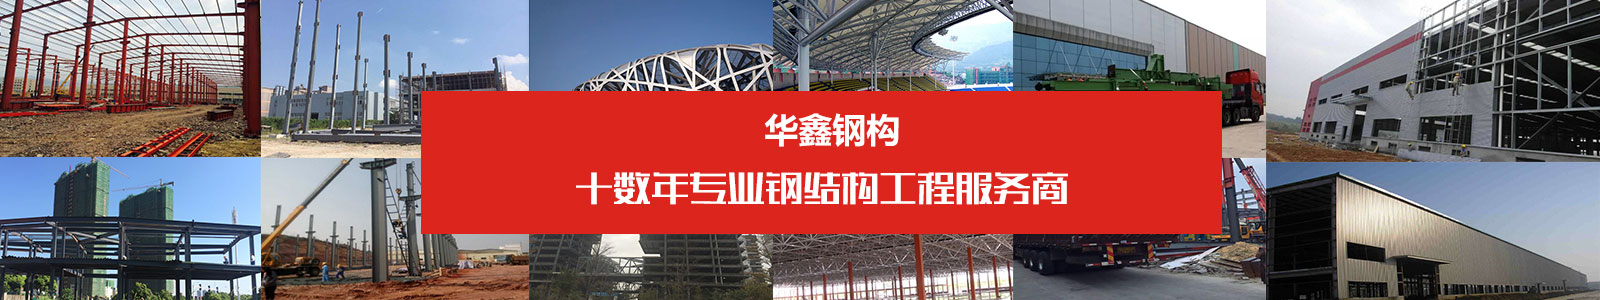 湖南钢结构领导品牌-华鑫钢结构